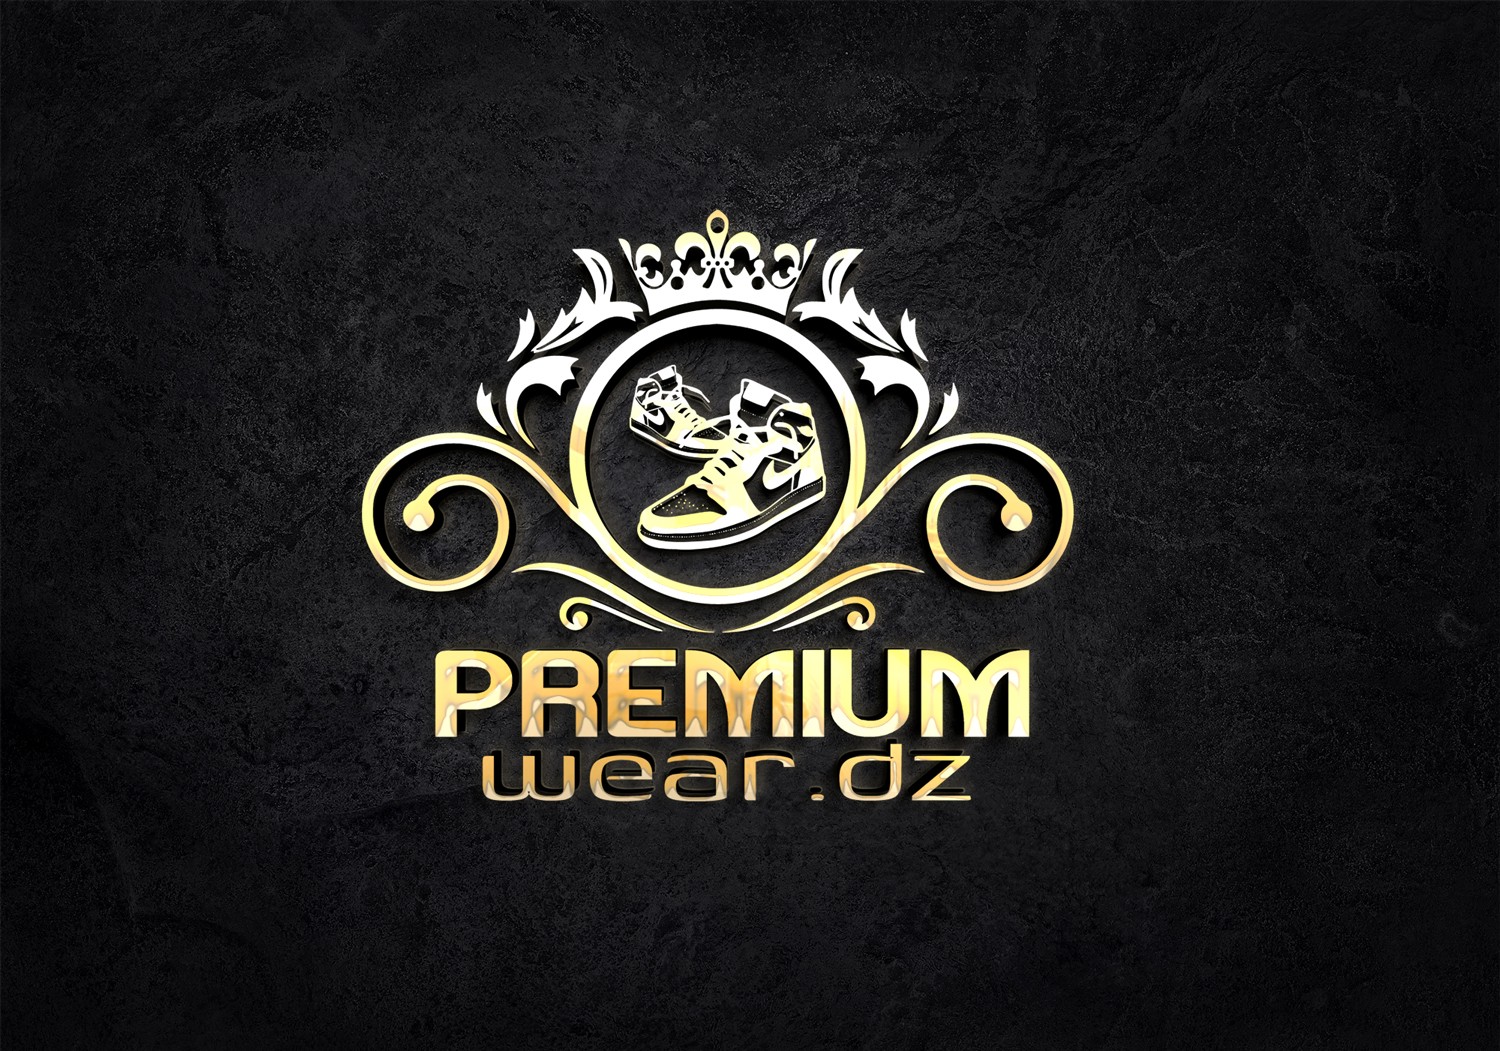 Premium wear dz